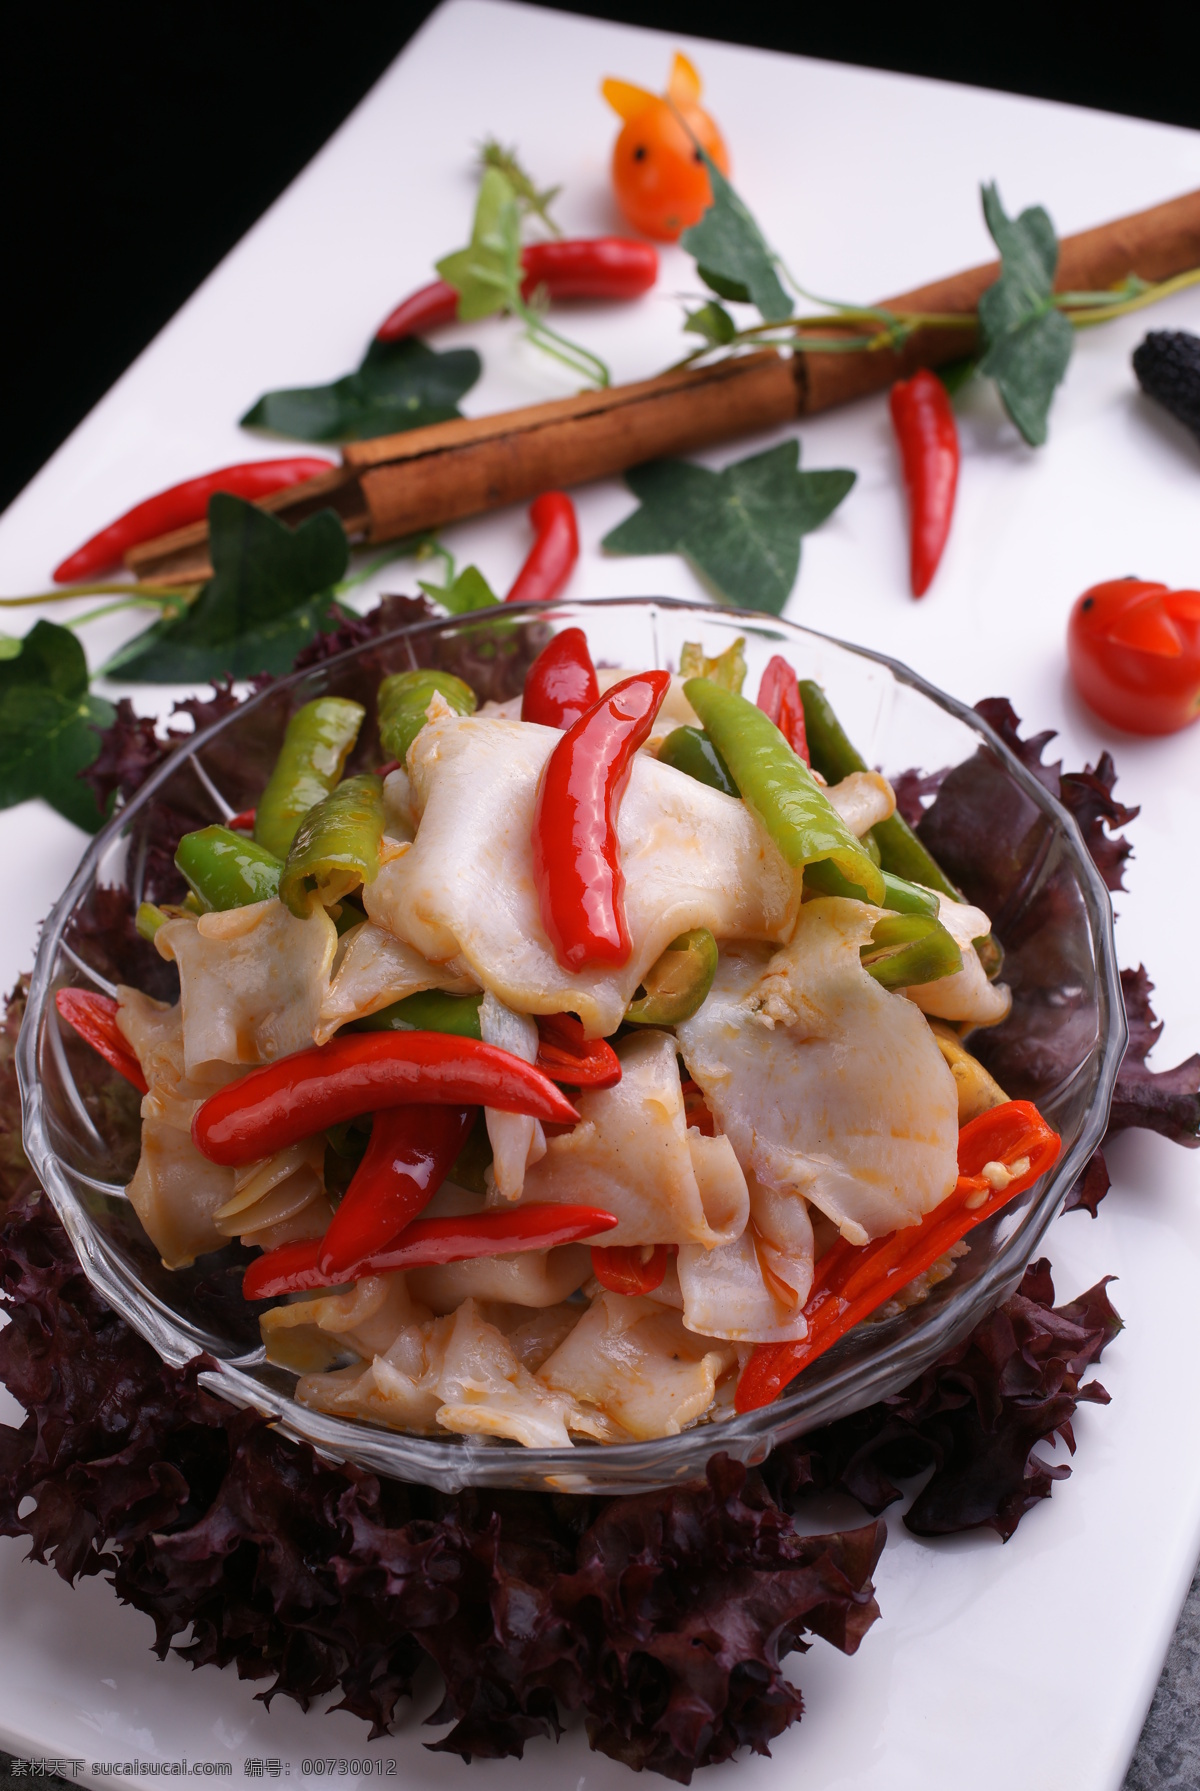 渔婆炒海螺 螺片肉 青红椒 热菜类 传统美食 餐饮美食